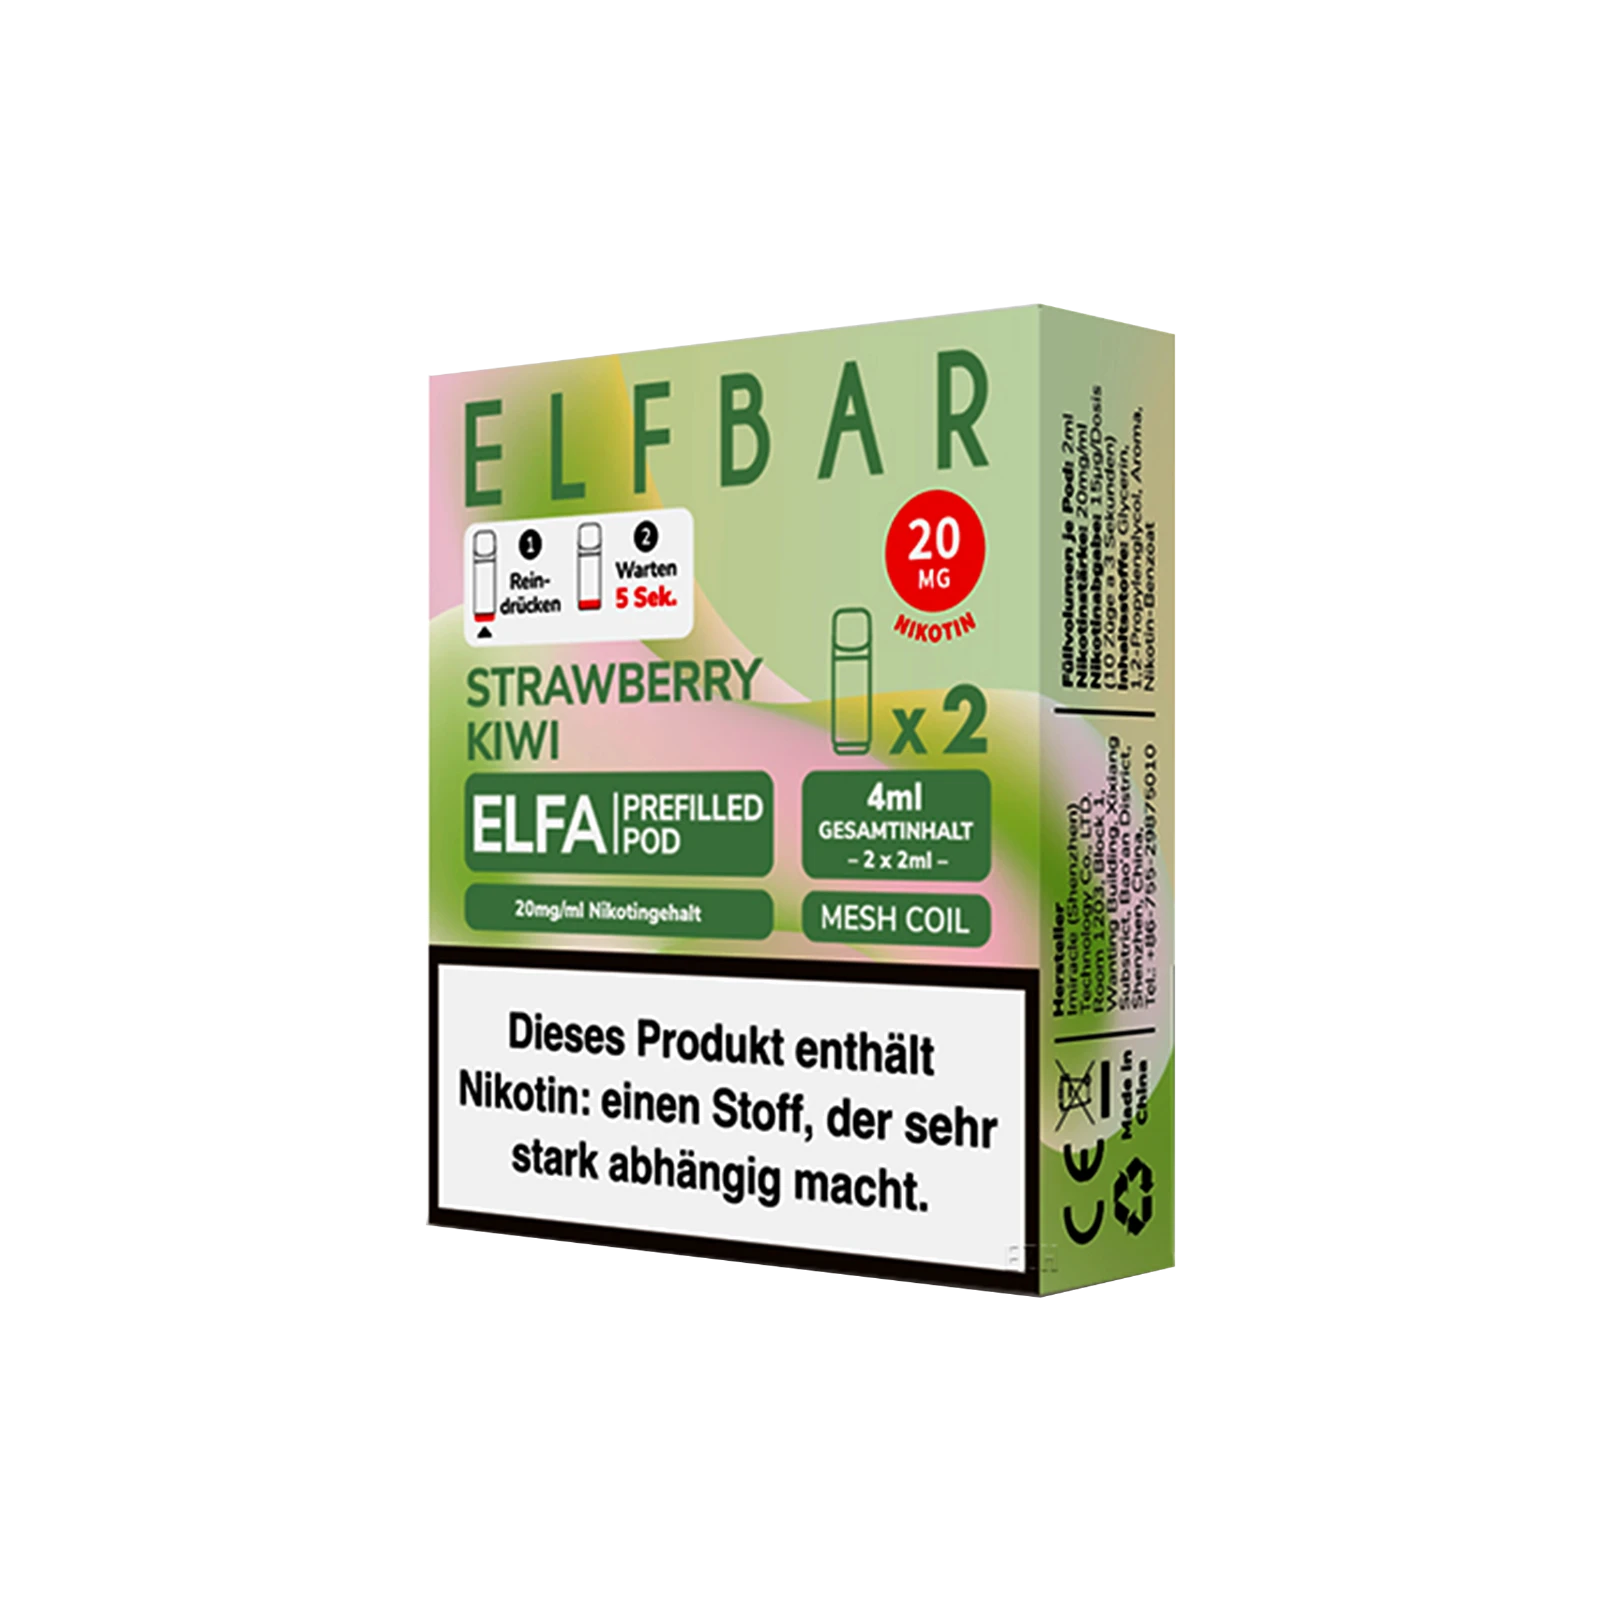 Elf Bar ELFA CP Prefilled Pod Strawberry Kiwi | Neue Liquid Sorten